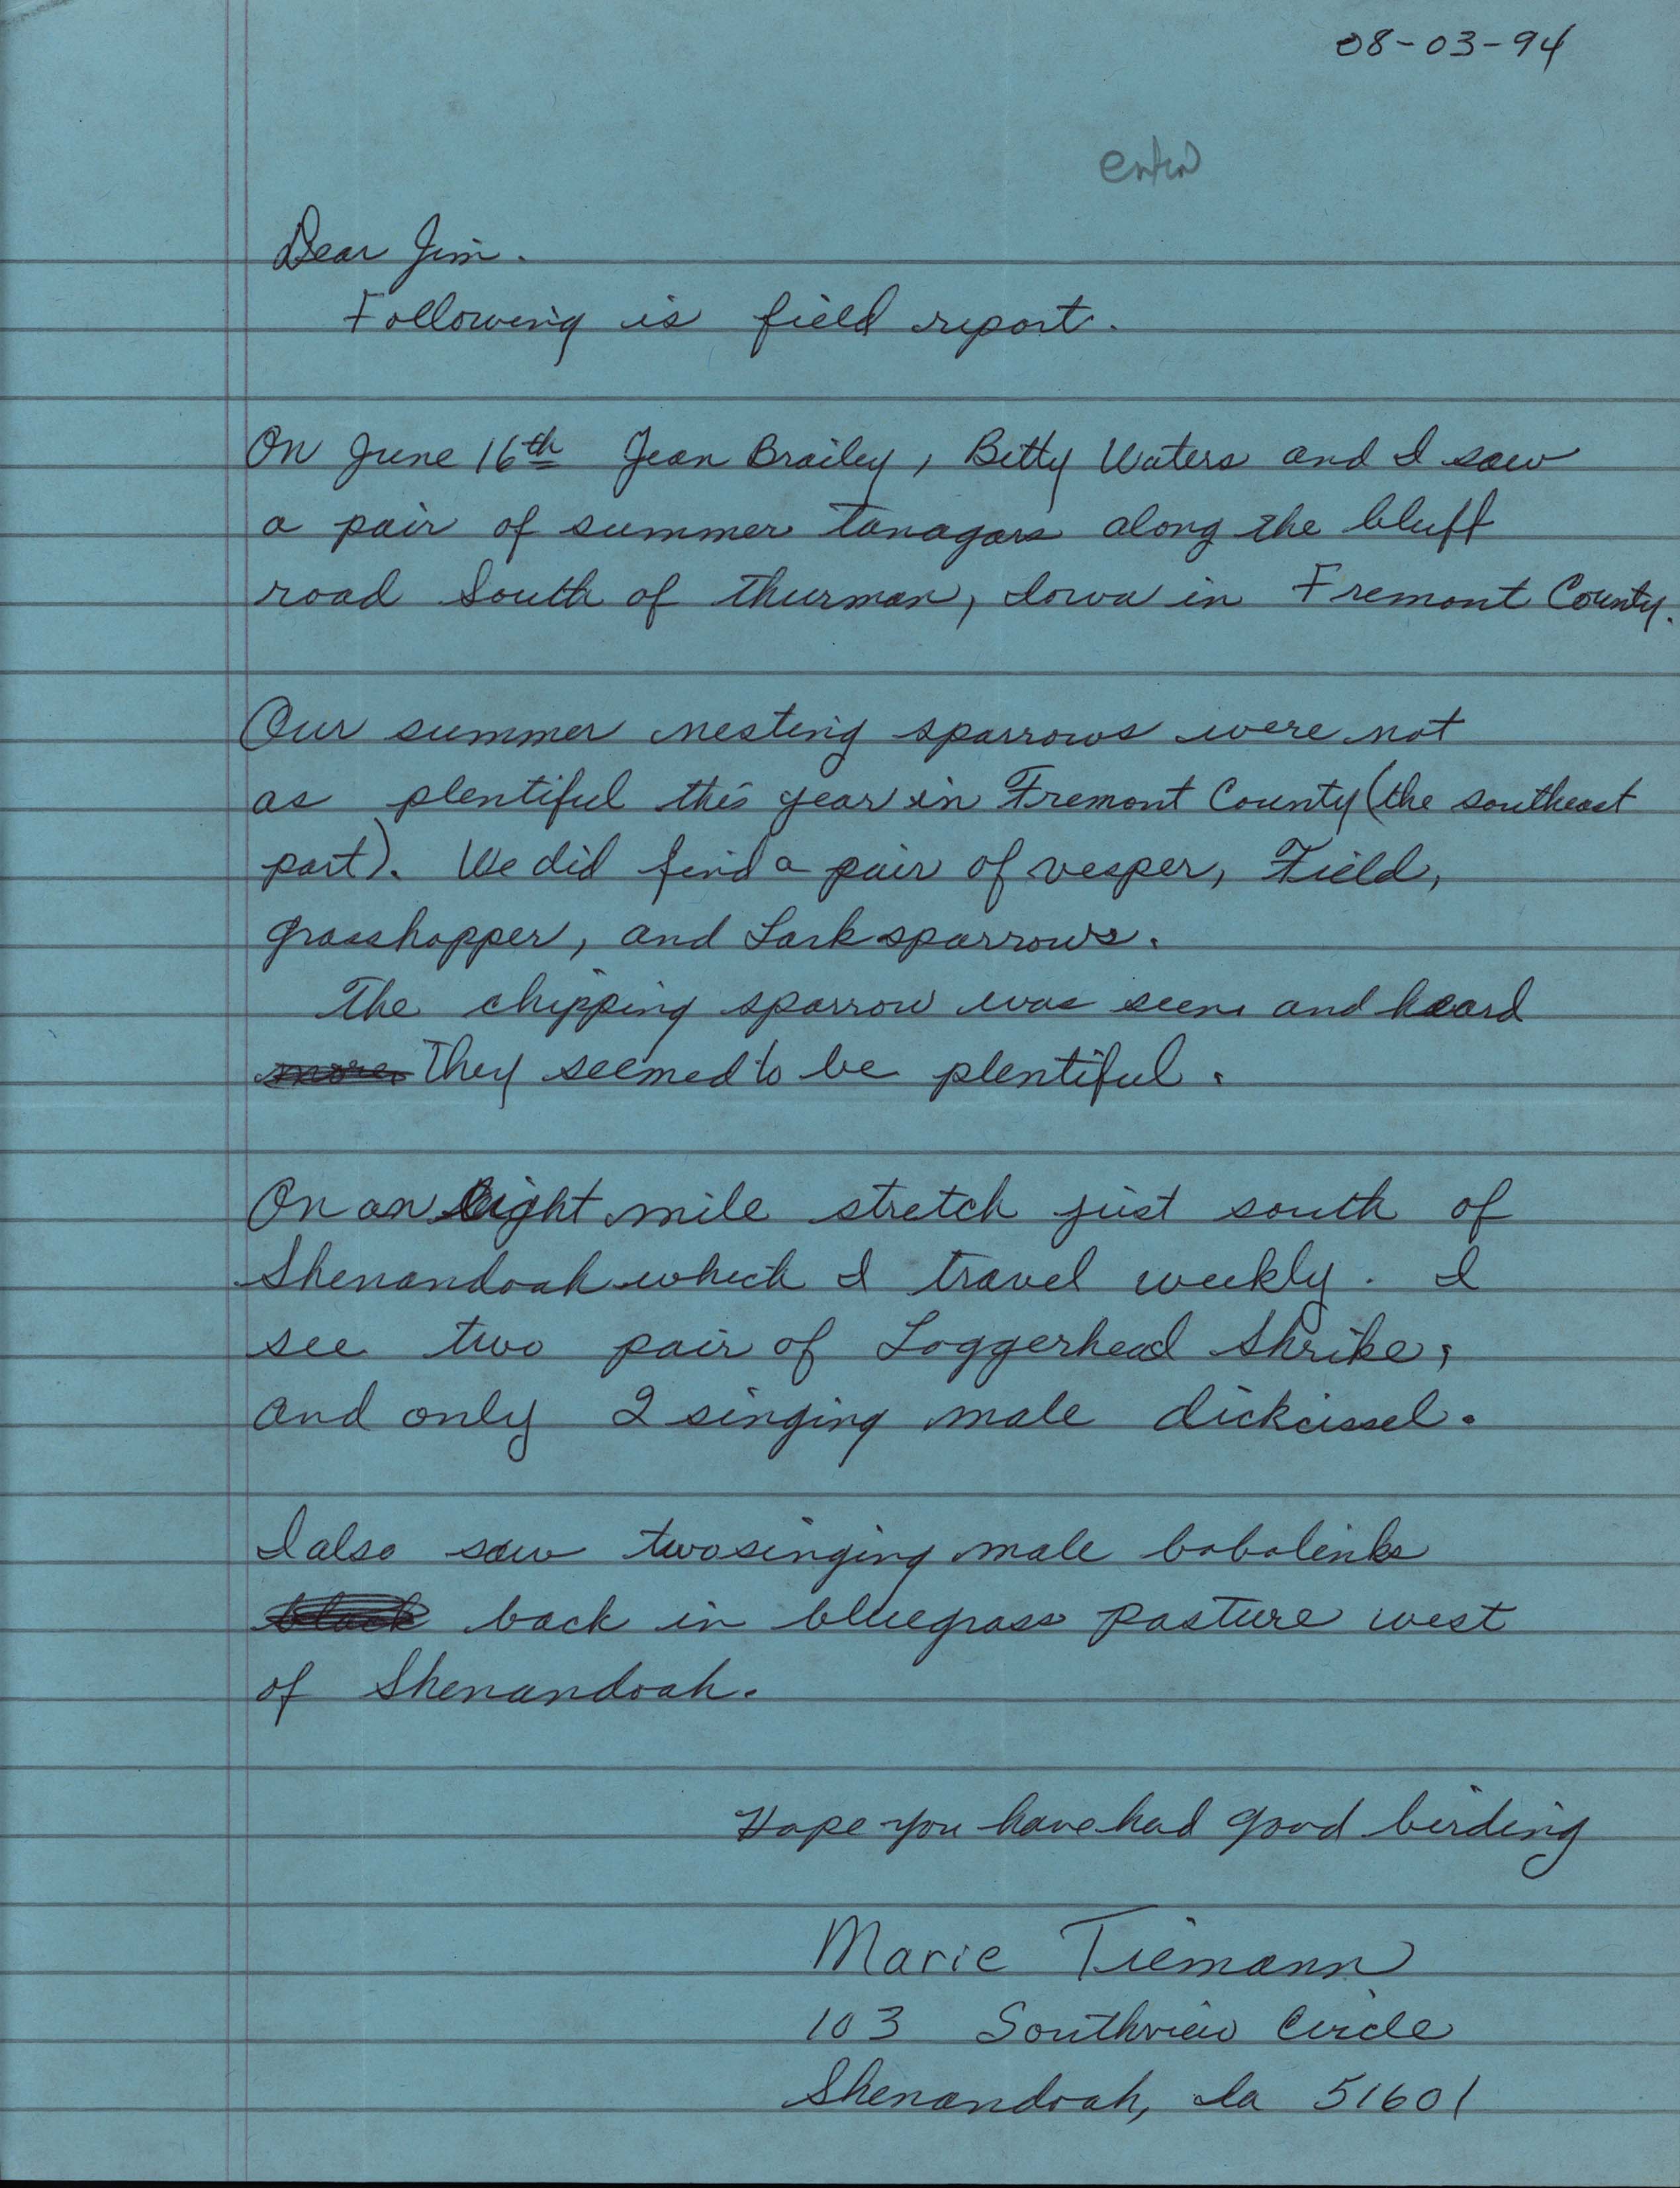 Marie Tiemann letter to Jim Dinsmore regarding summer sightings, August 3, 1994